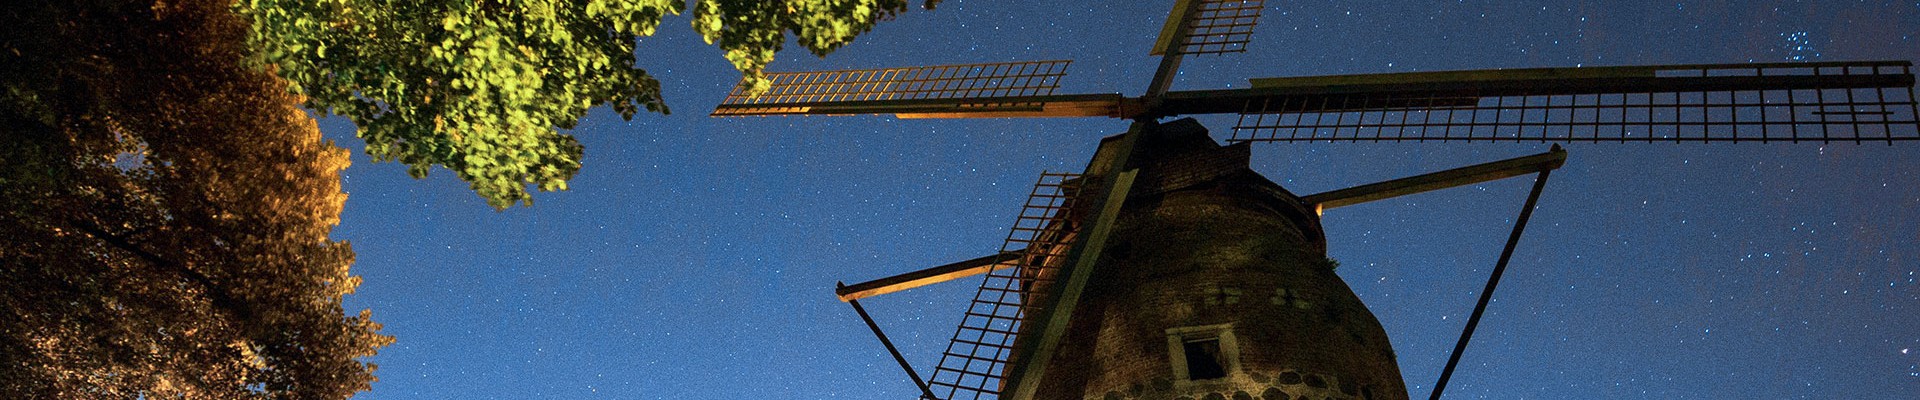 Die historische Mühle der Stadt Zons vor Sternenhimmel.